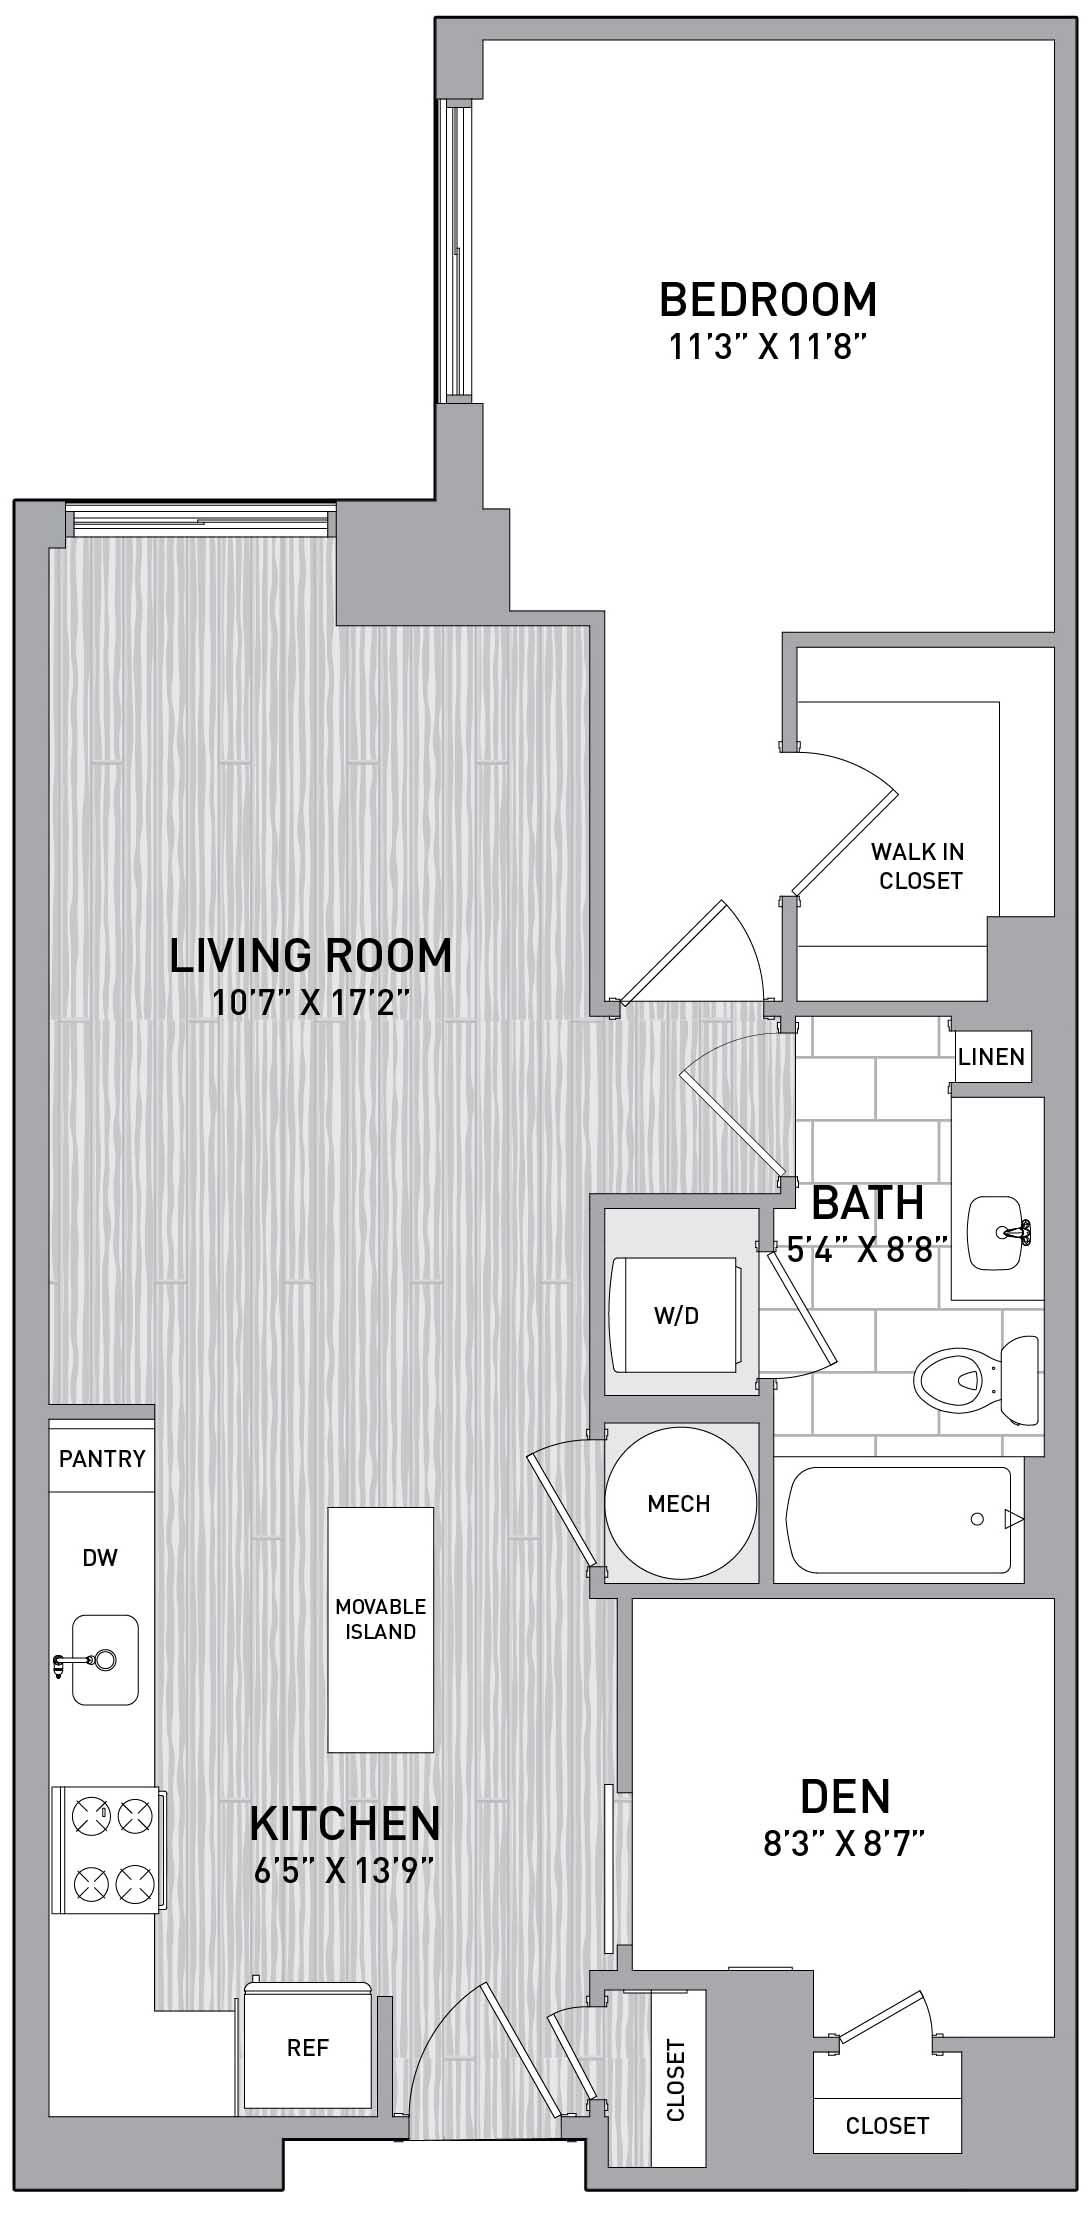 Floorplan Image of unit 151-0515